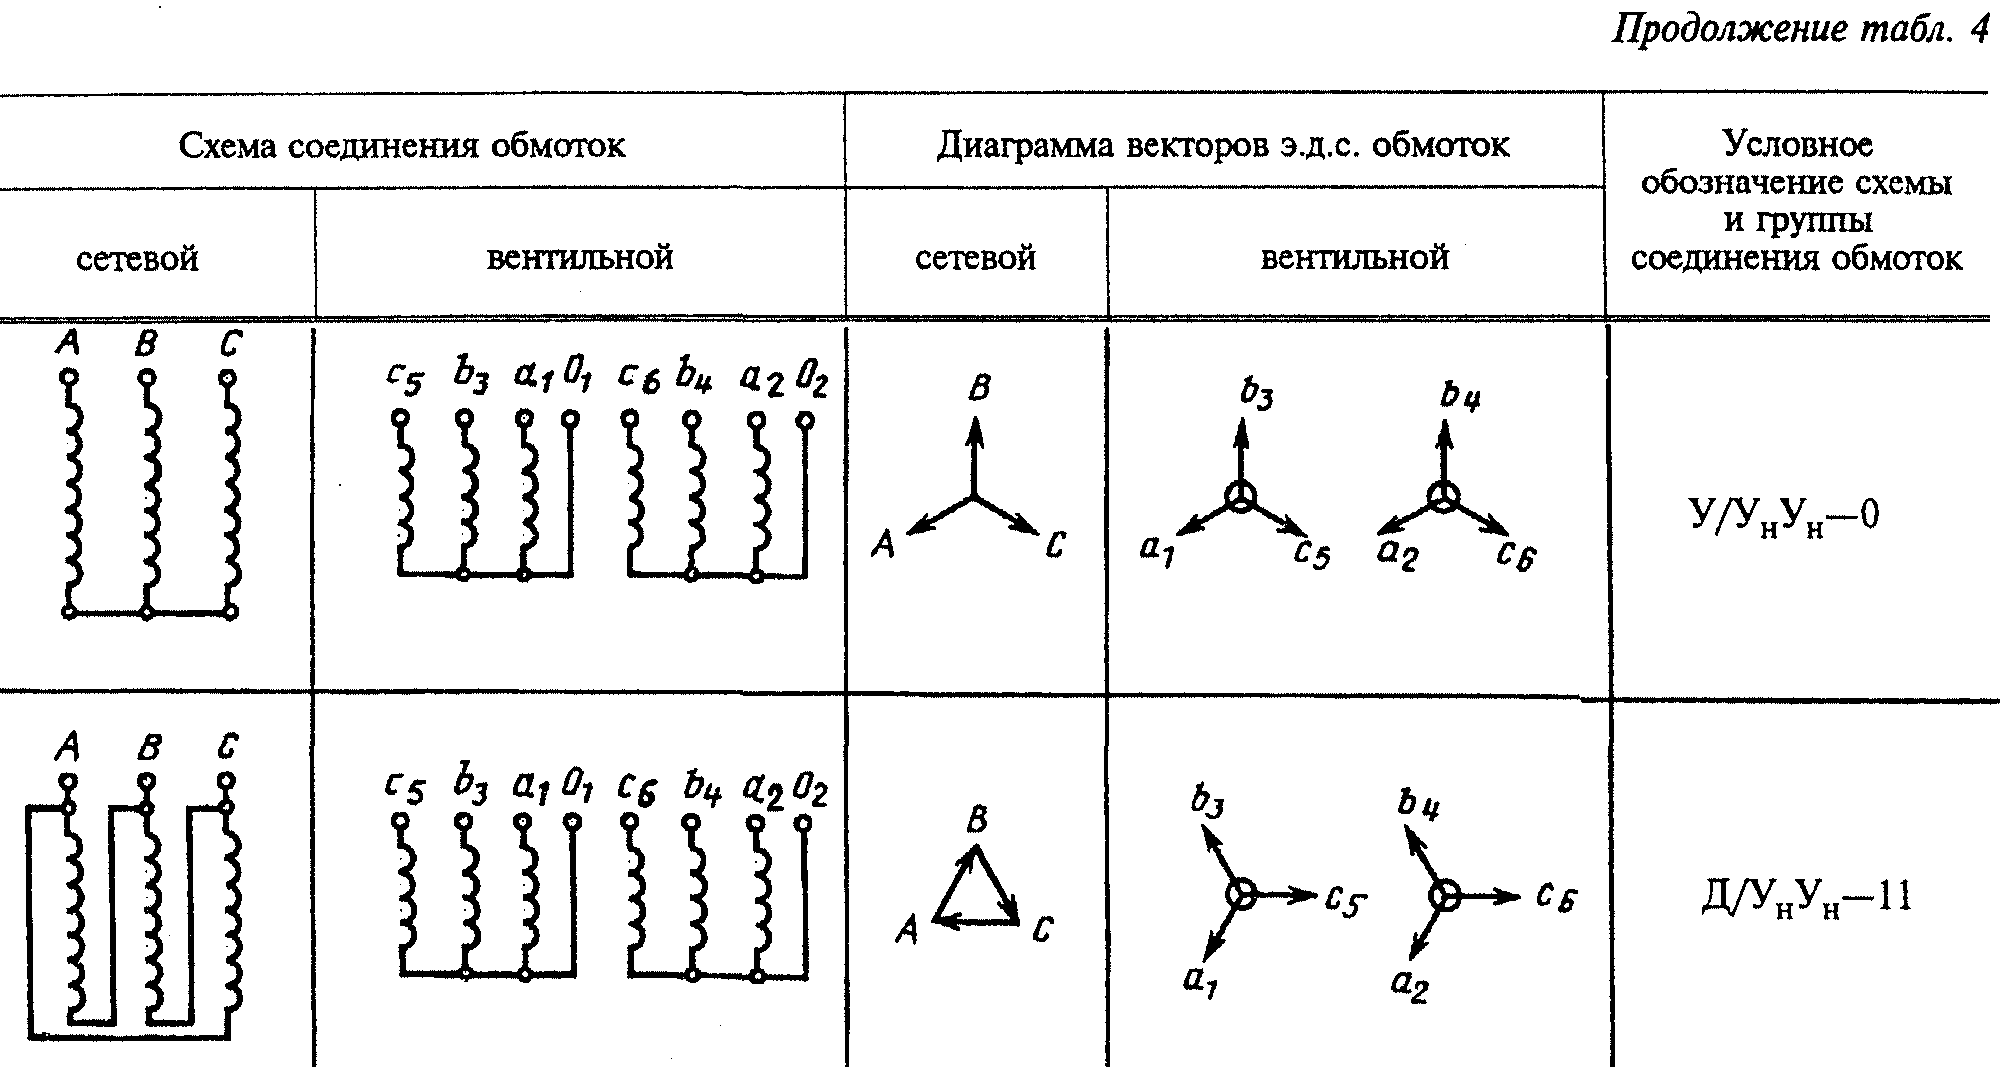 Схемы соединения силовых трансформаторов. Схема соединения обмоток трансформатора 1/1-0. 1/1-0 Группа соединения. Обозначения схемы соединения обмоток. Схема соединения обмоток трансформатора у/Zн-11.